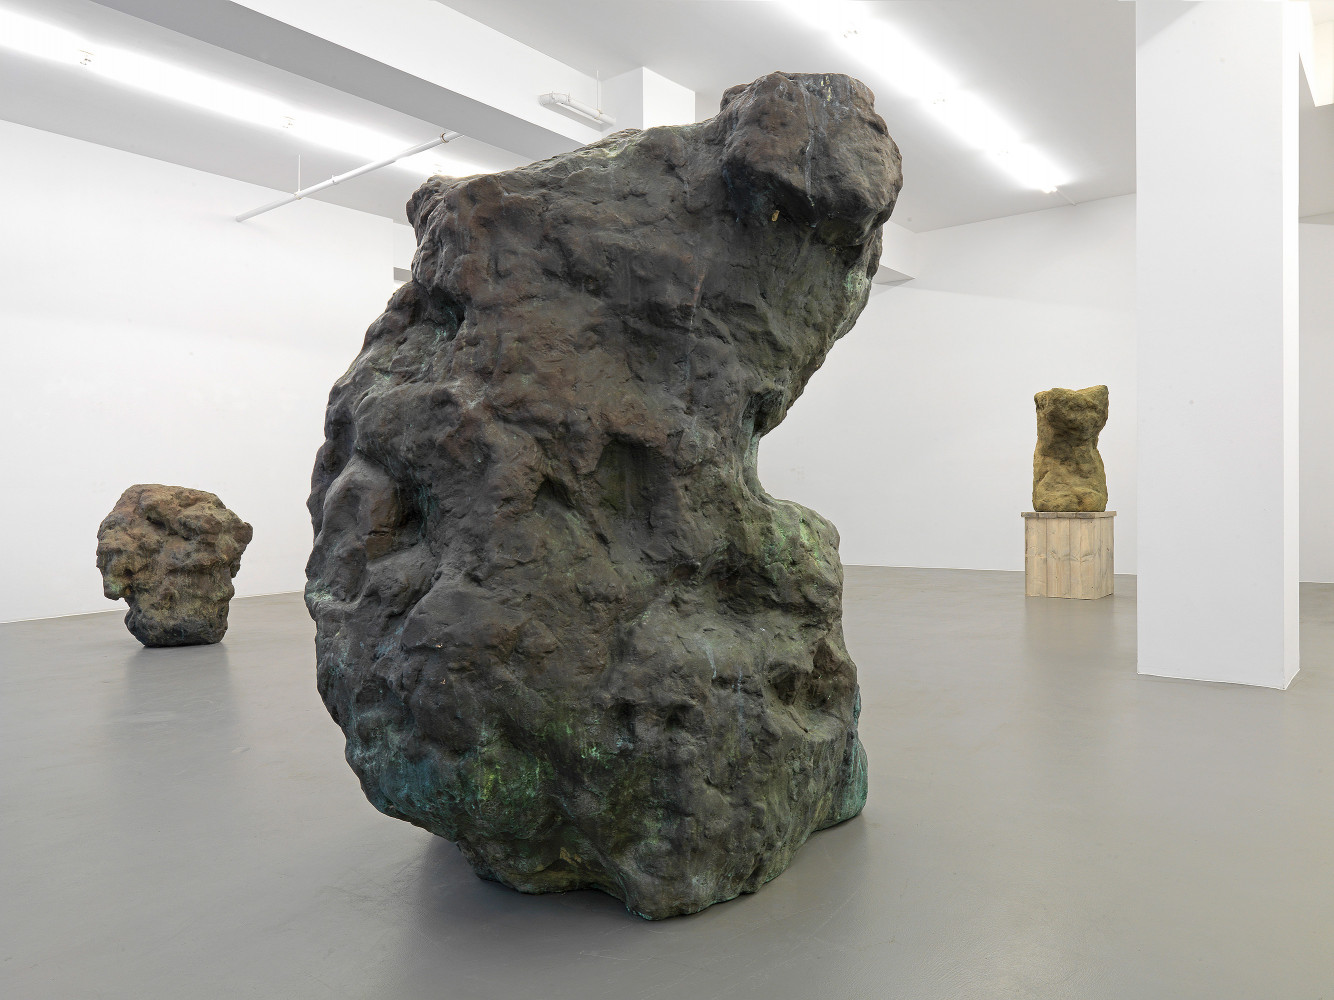 William Tucker, ‘Sculpture’, Installation view, Buchmann Galerie, 2013